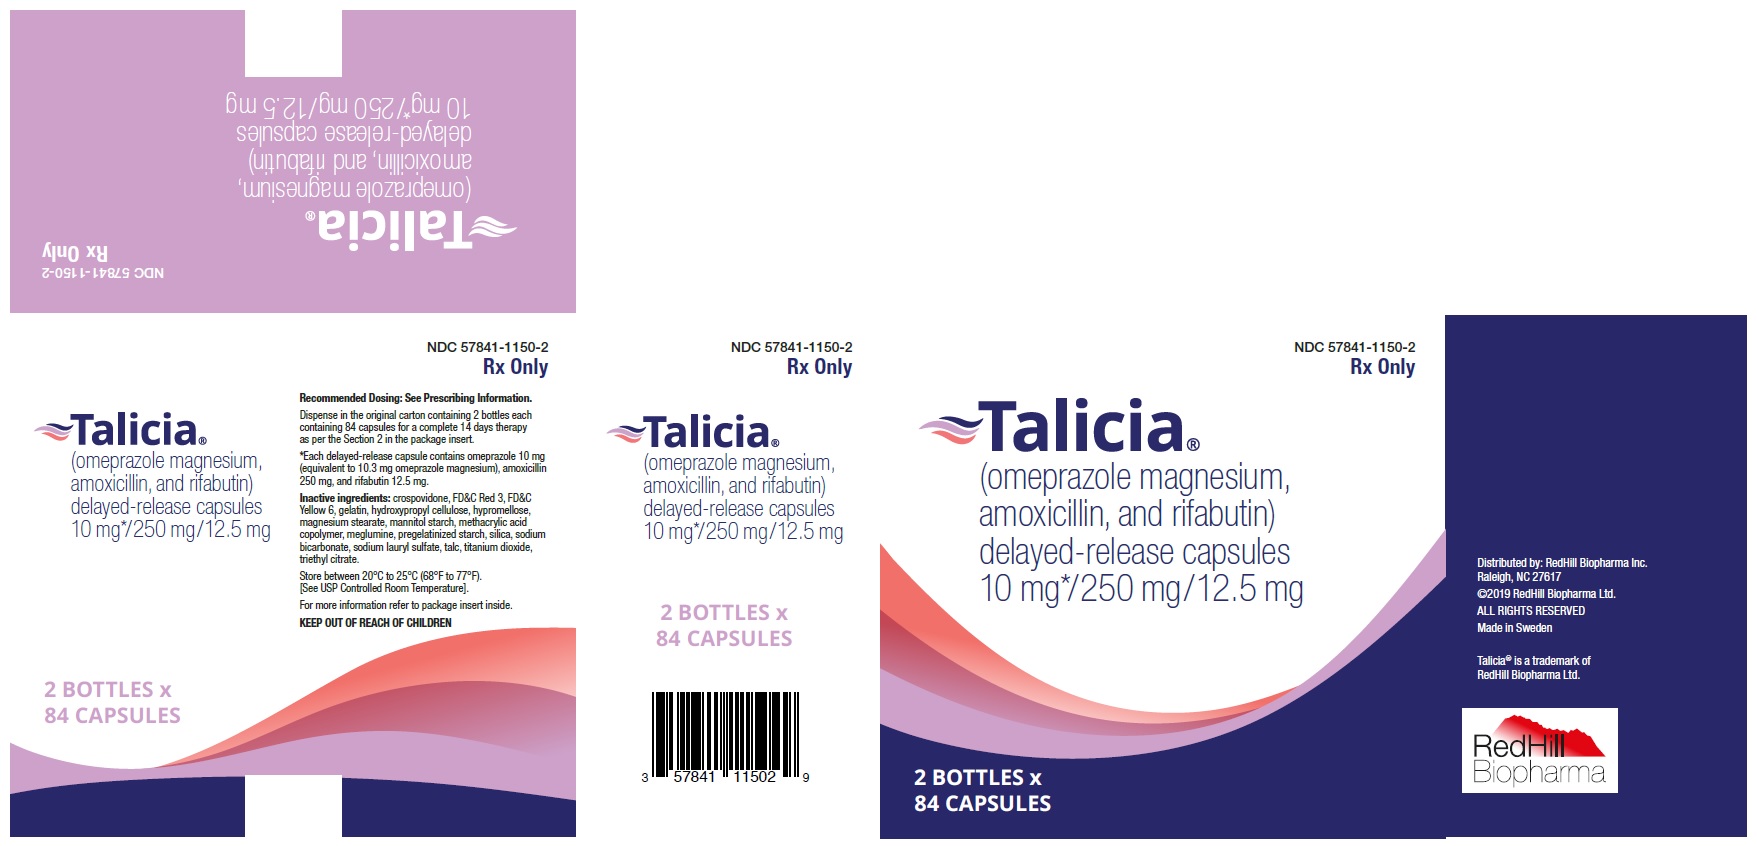 Talicia Carton Label